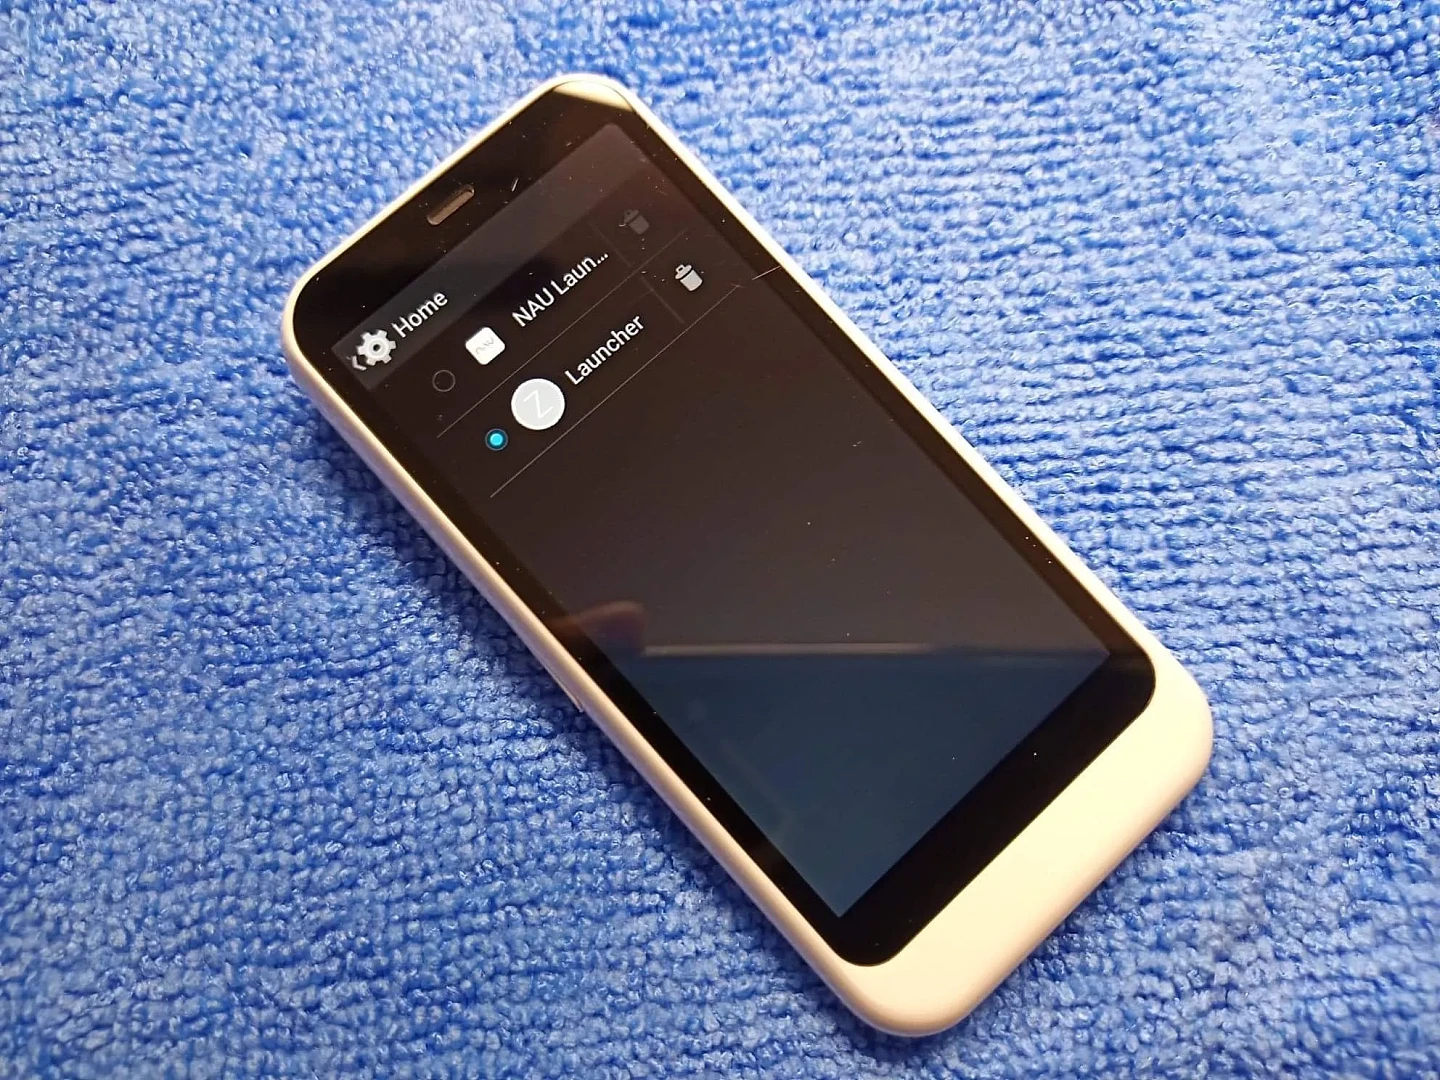 Nokia-RM-1028-UI-3.webp